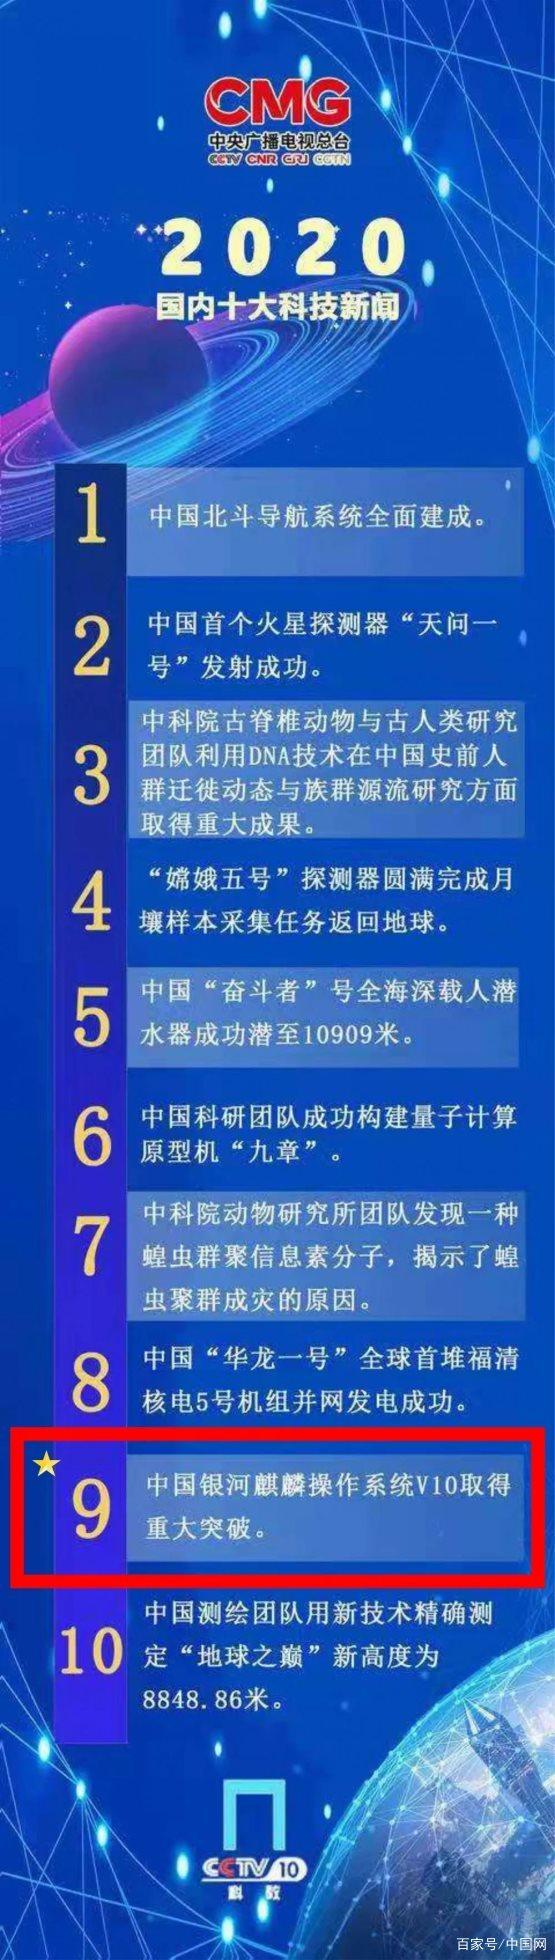 银河麒麟V10入选2020中国十大科技新闻休闲区蓝鸢梦想 – Www.slyday.coM